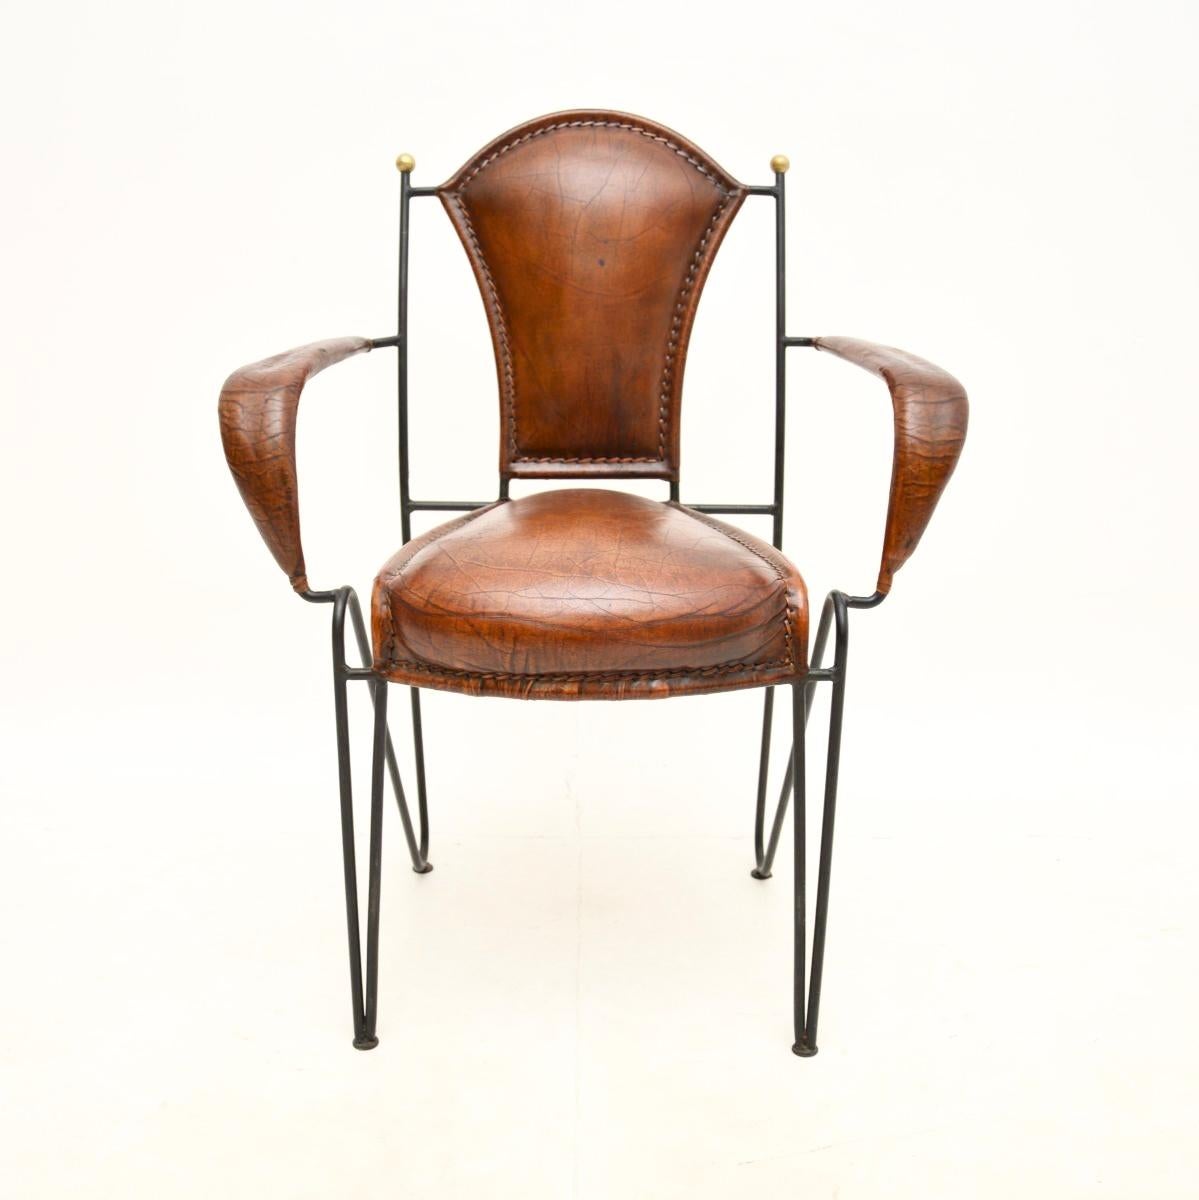 Ein wunderschöner französischer Sessel aus Eisen und Leder aus den 1960er Jahren. Er hat die richtige Größe für den Einsatz als Schreibtischstuhl oder als Beistellstuhl.

Dieses Modell wird oft Jacques Adnet zugeschrieben, es ist von hervorragender